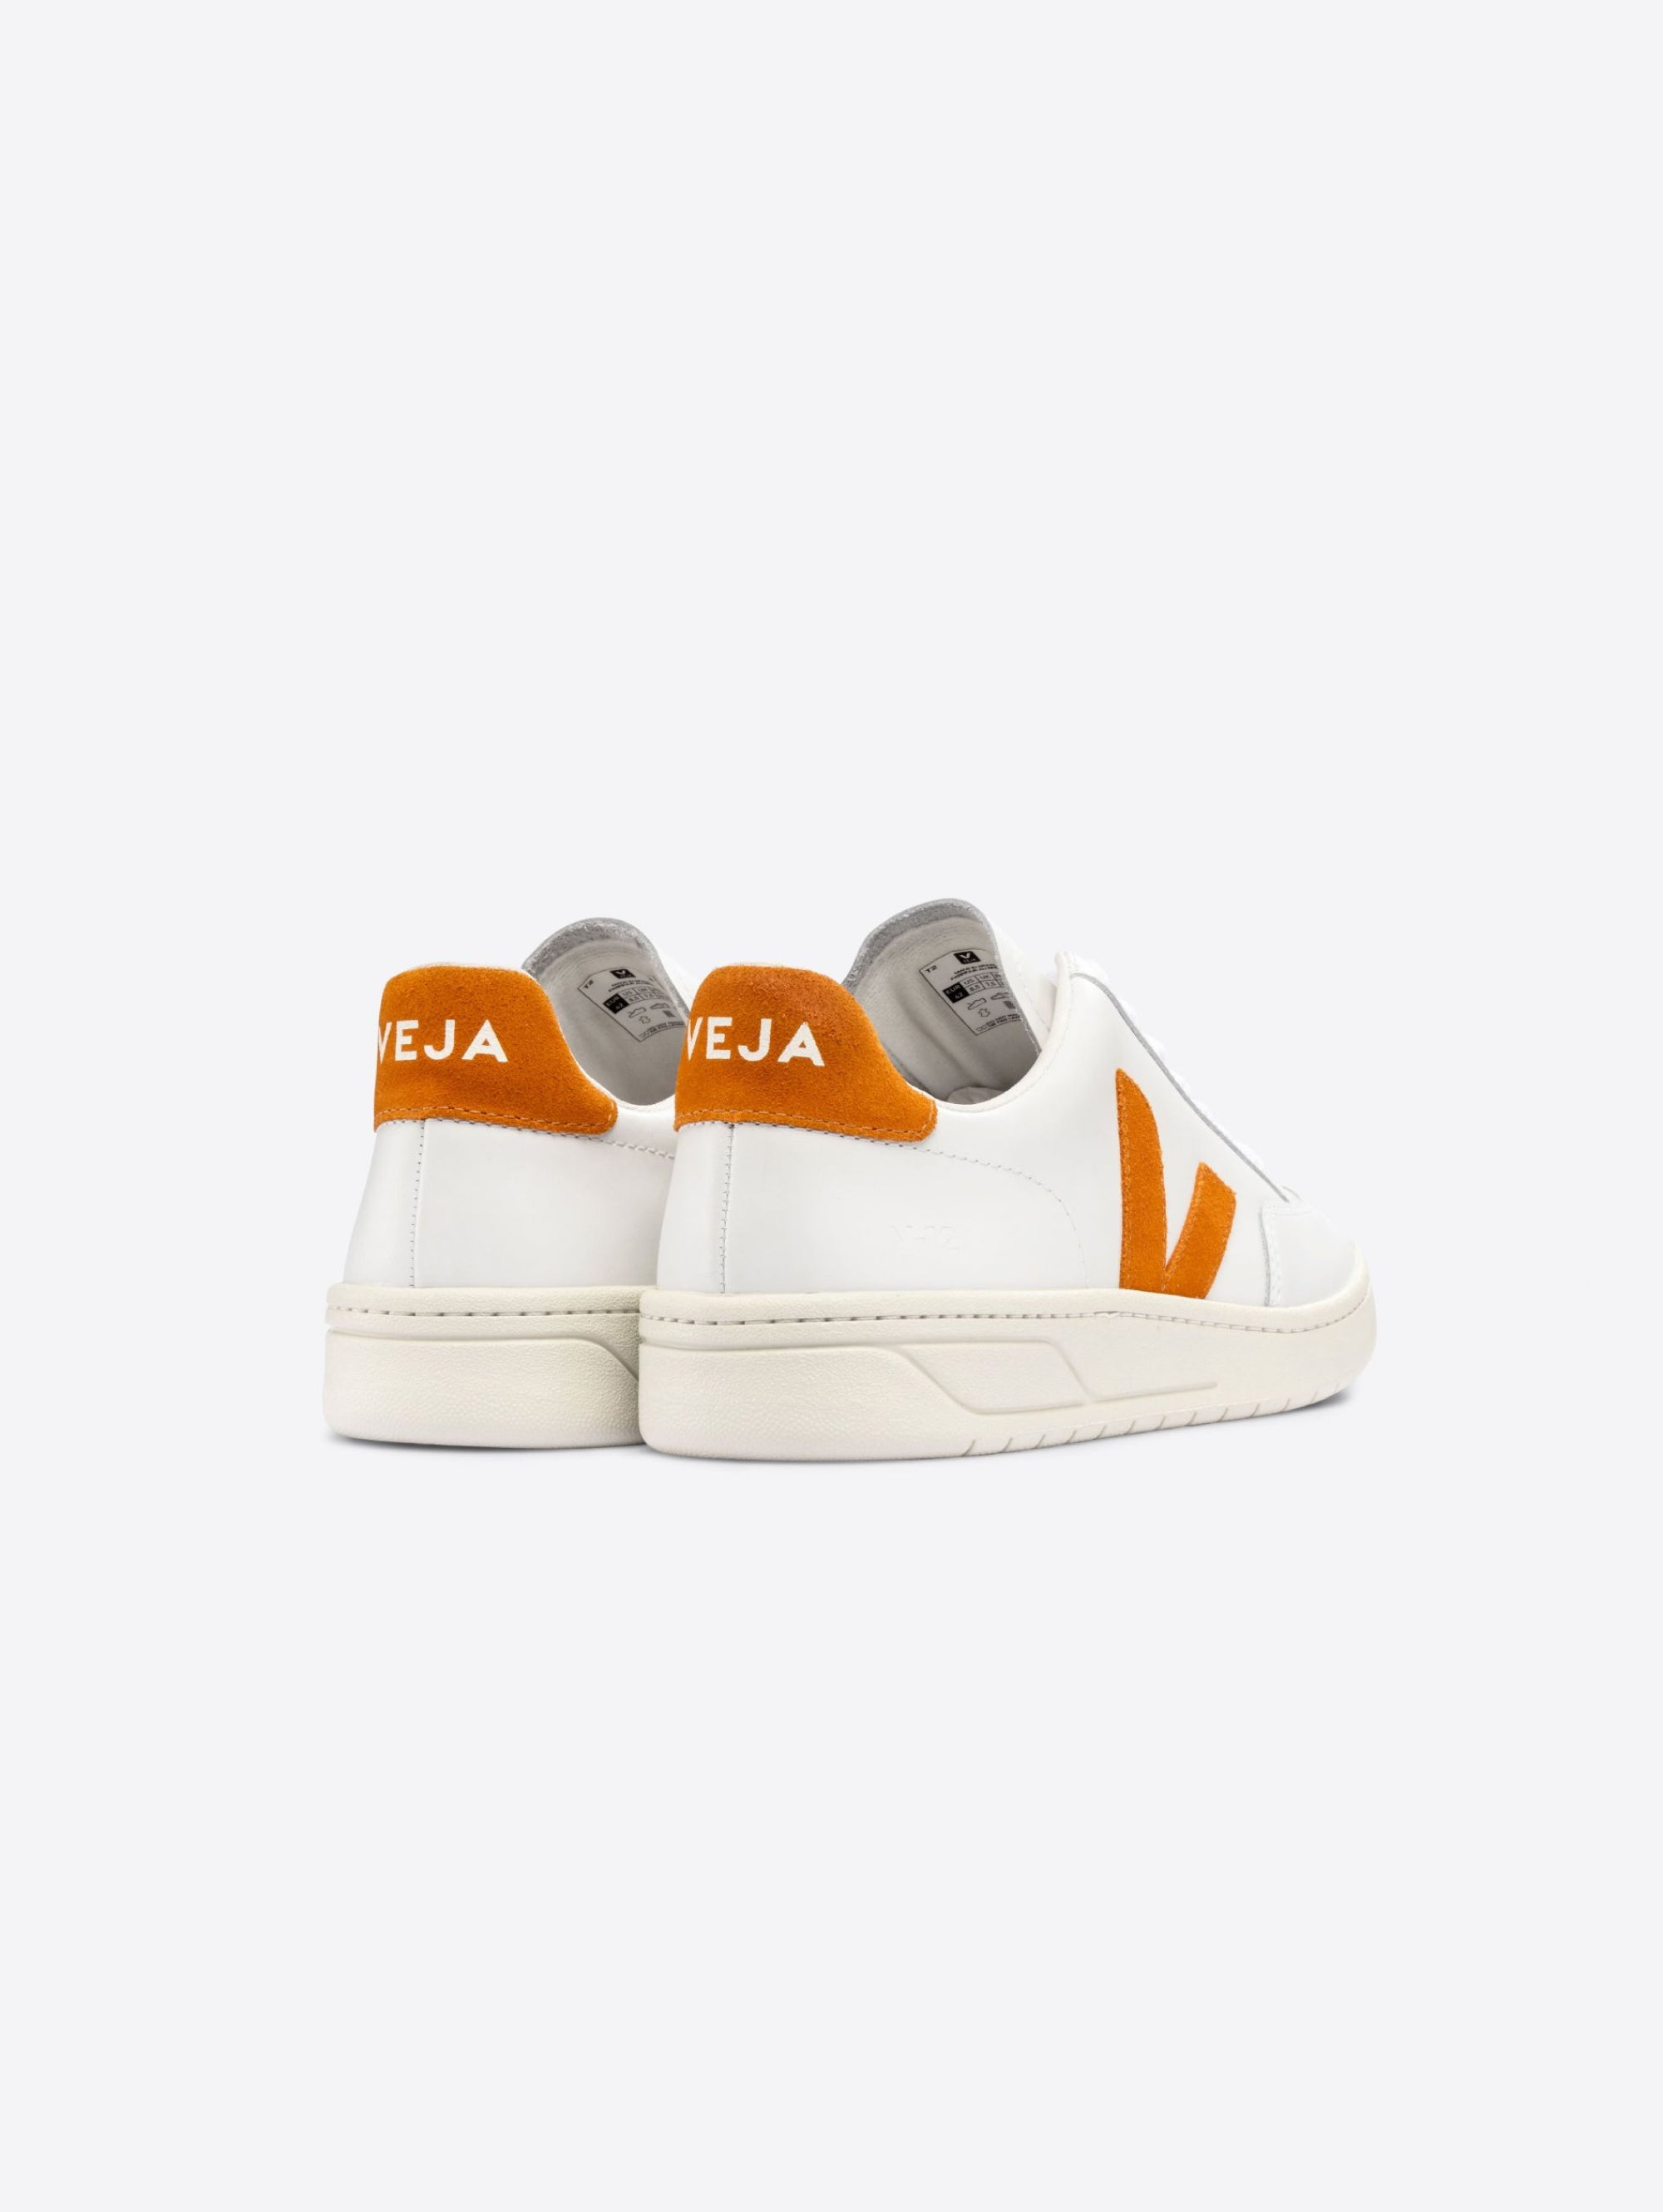 V-12 Weiß/Orange Damen Sneakers aus nachhaltigem Leder